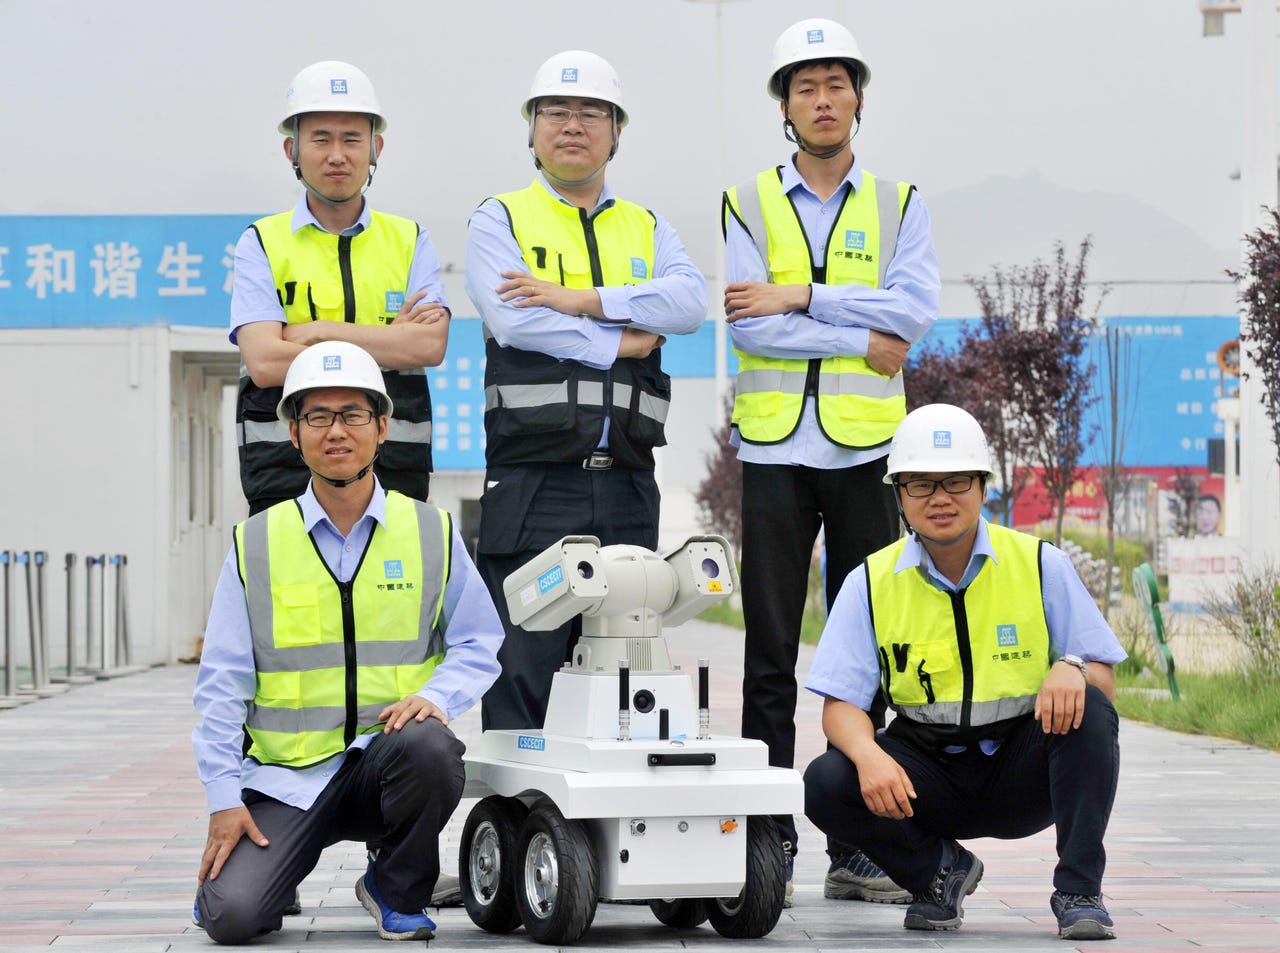 Cinco personas con equipo de seguridad posaron para una foto de equipo con un robot de inspección con ruedas.